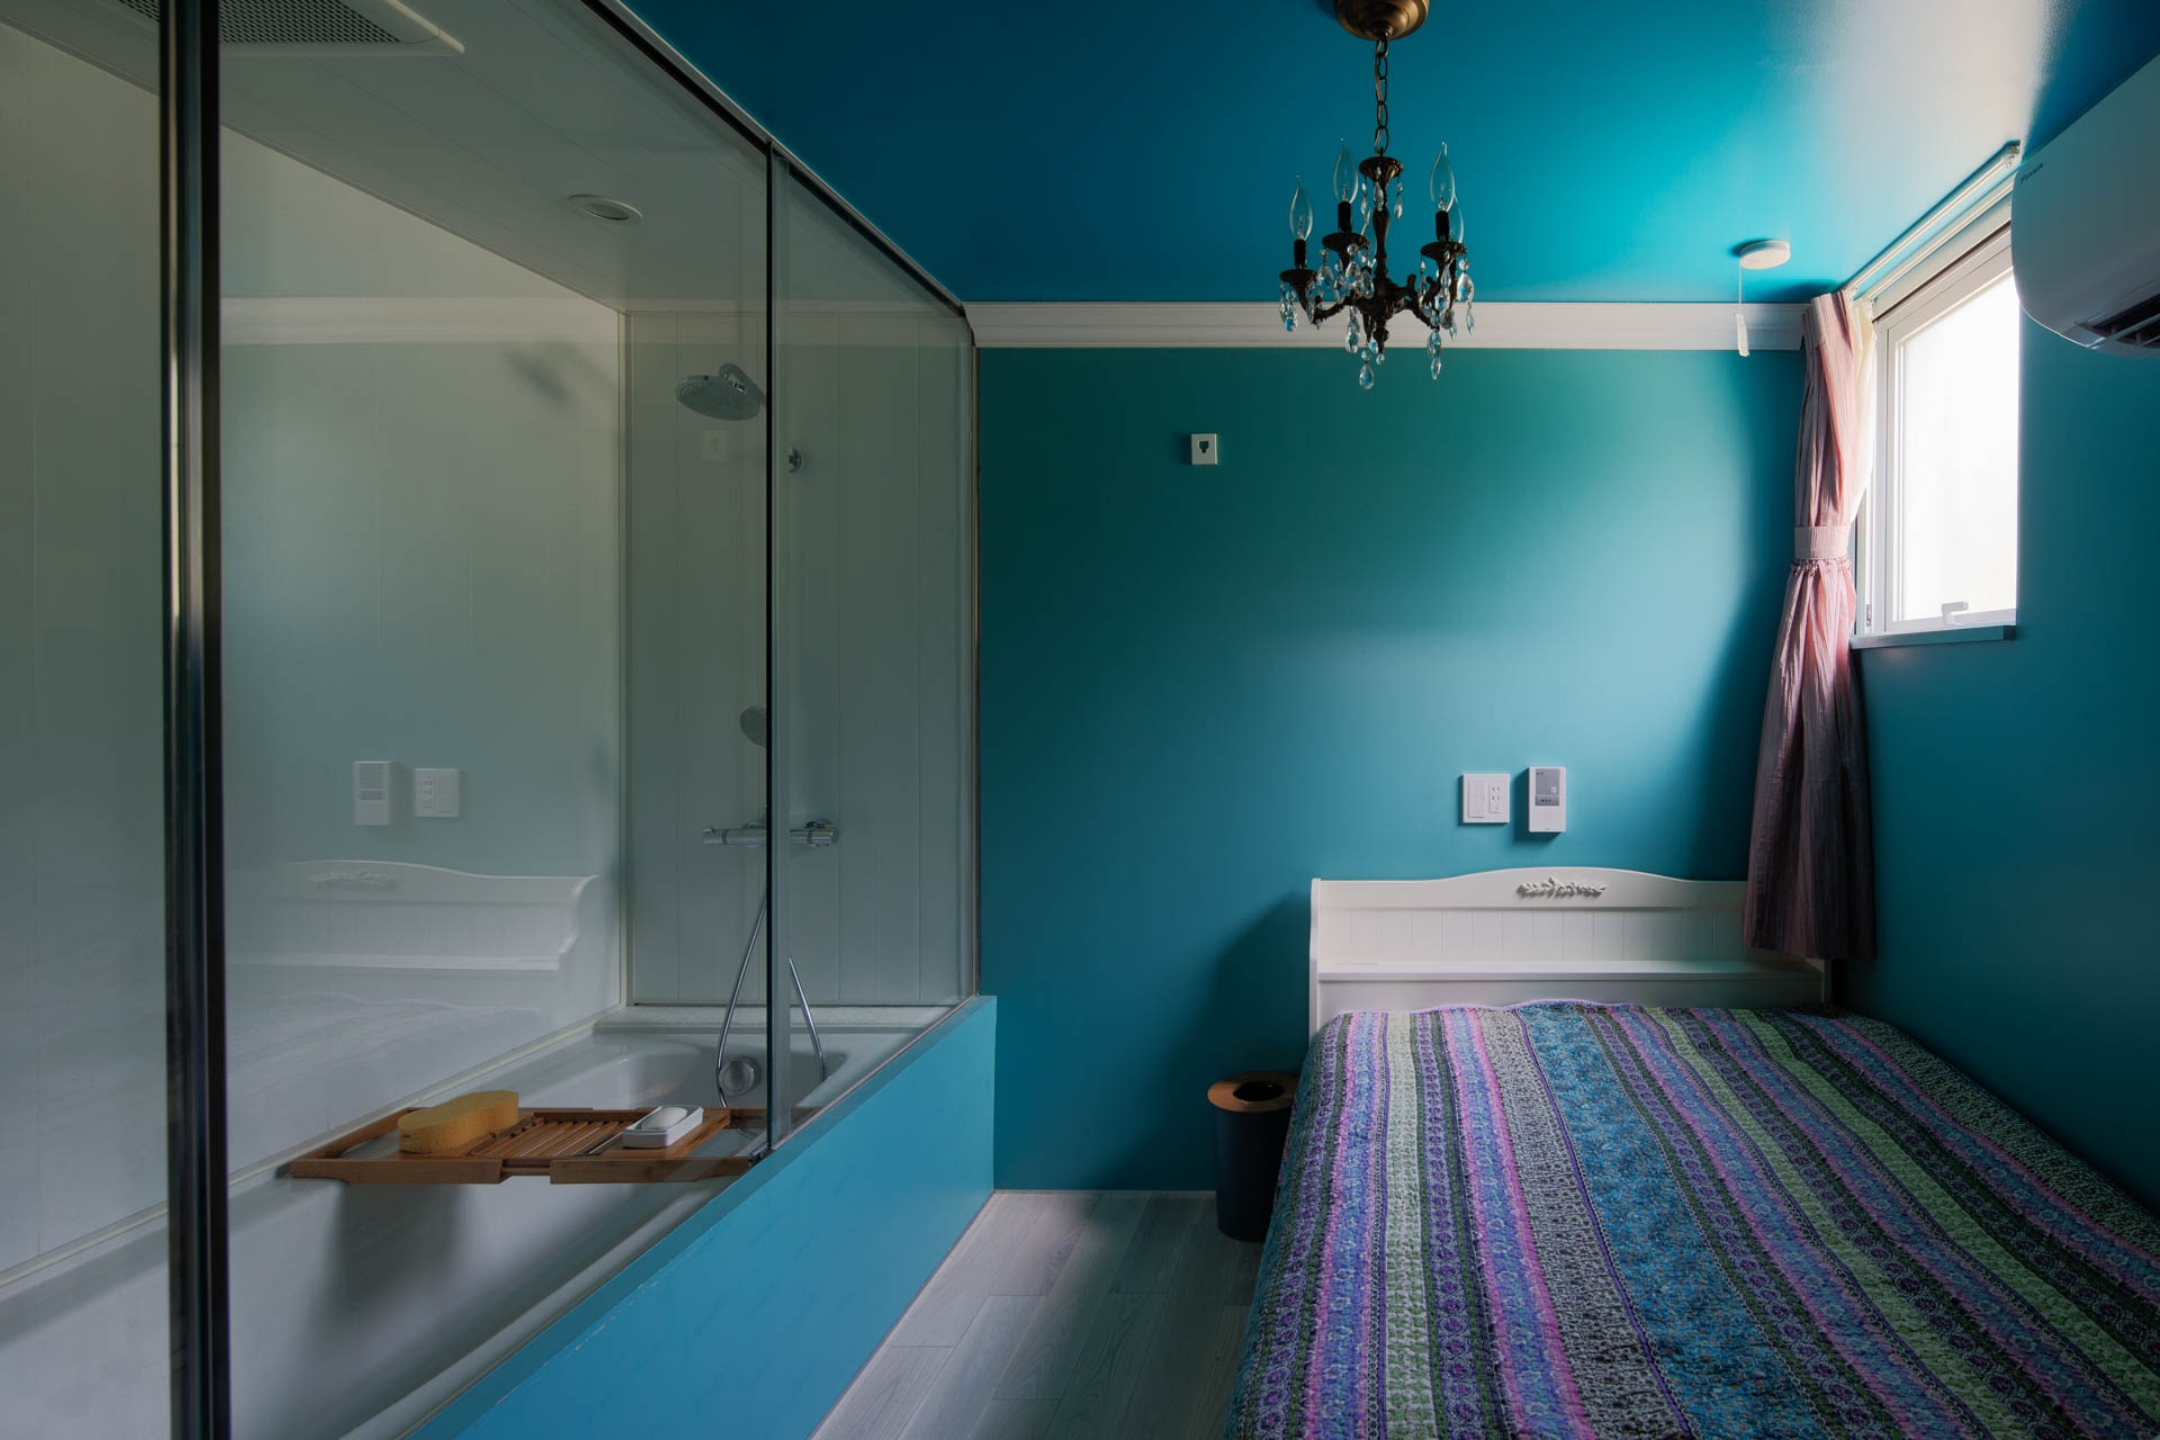 ホテルのようなバスルーム、青が印象的